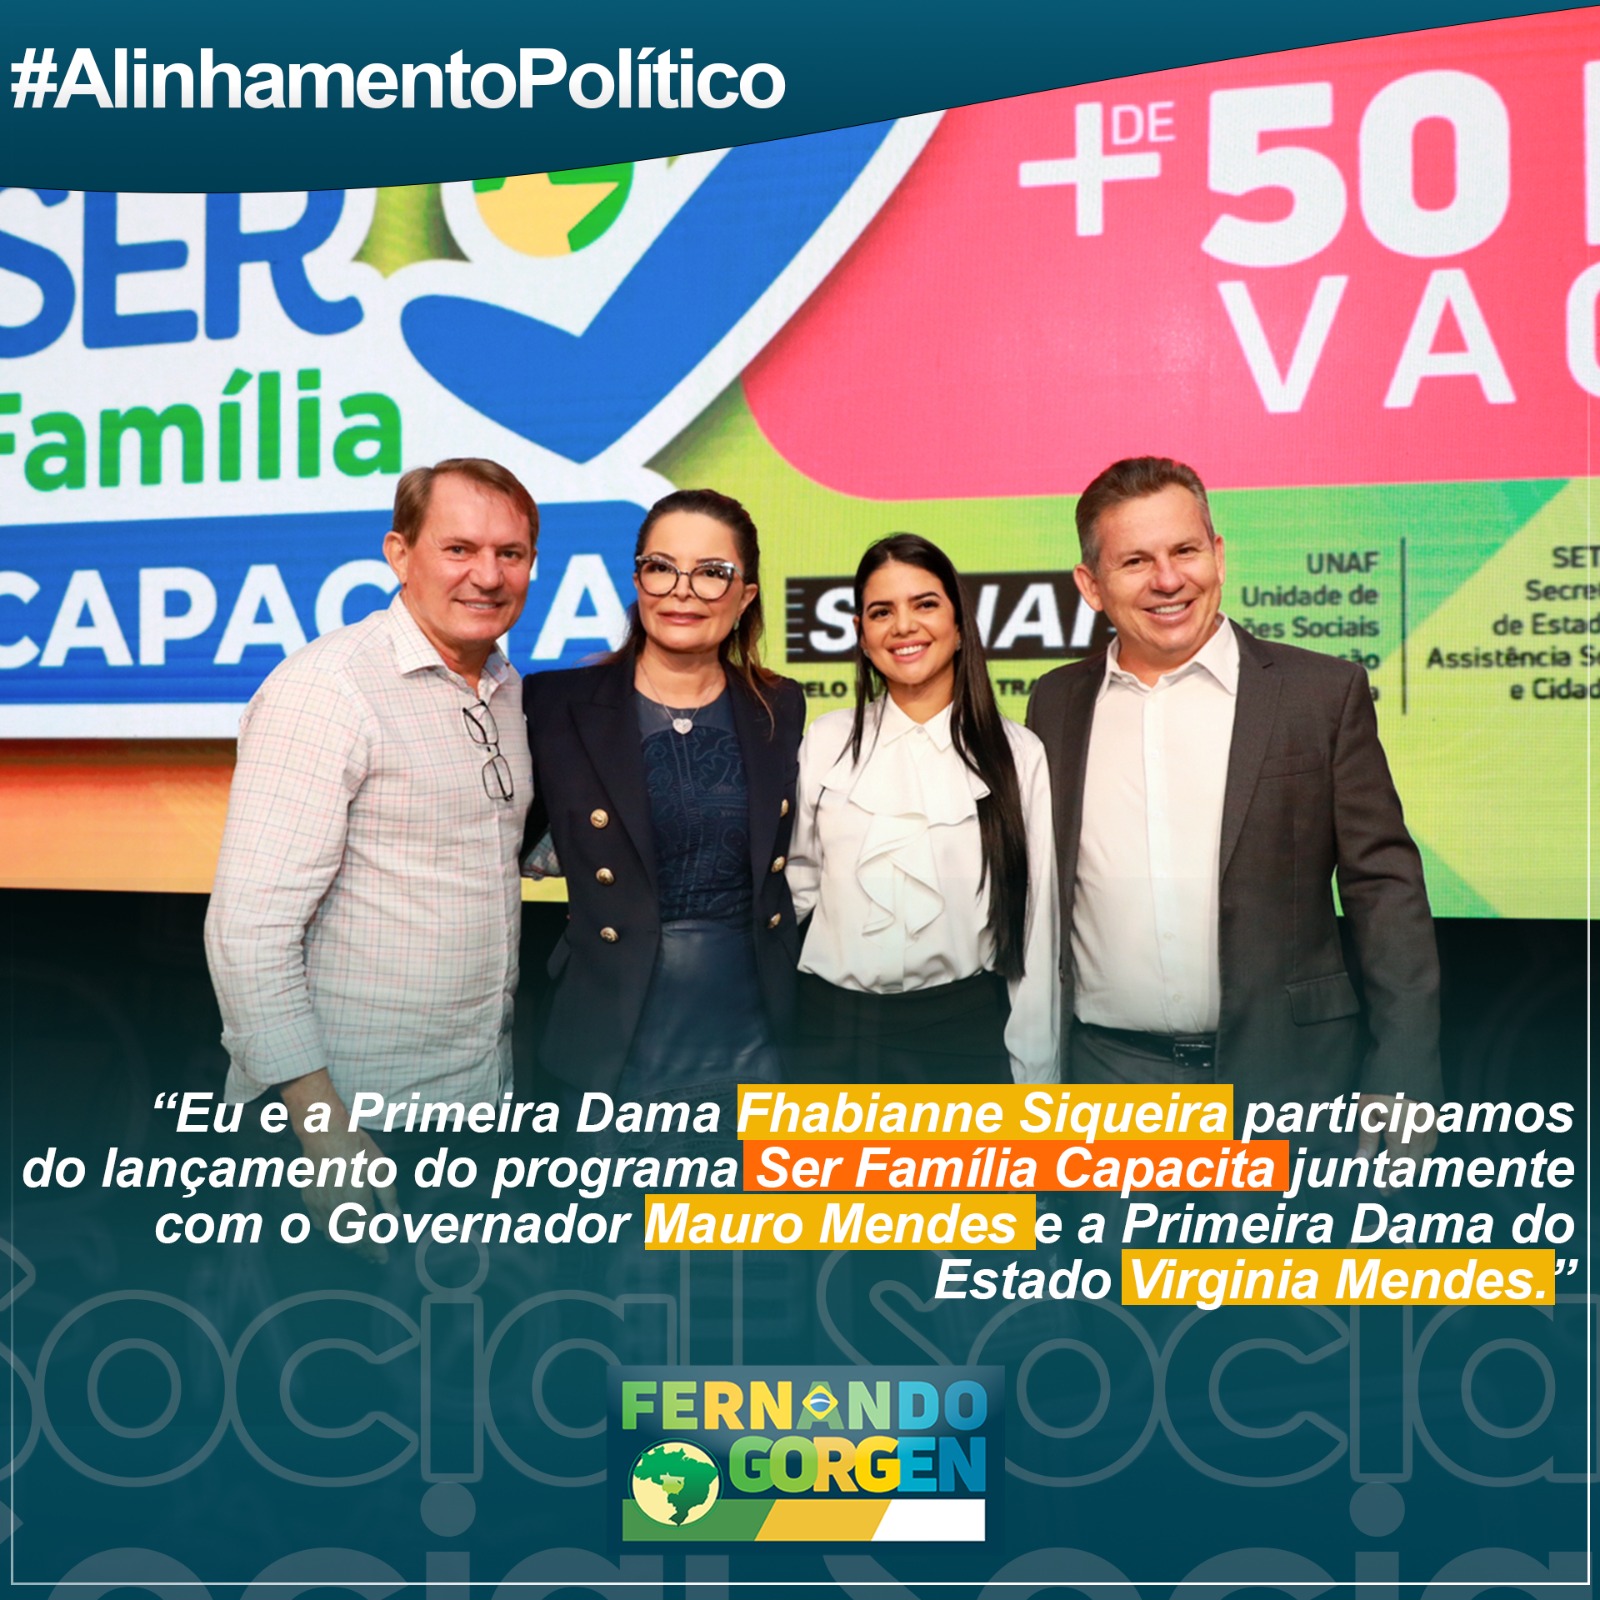 Photo of Prefeito de Querência Fernando Gorgen e Primeira Dama Fhabianne Siqueira participaram do lançamento do programa “Ser Família Capacita”